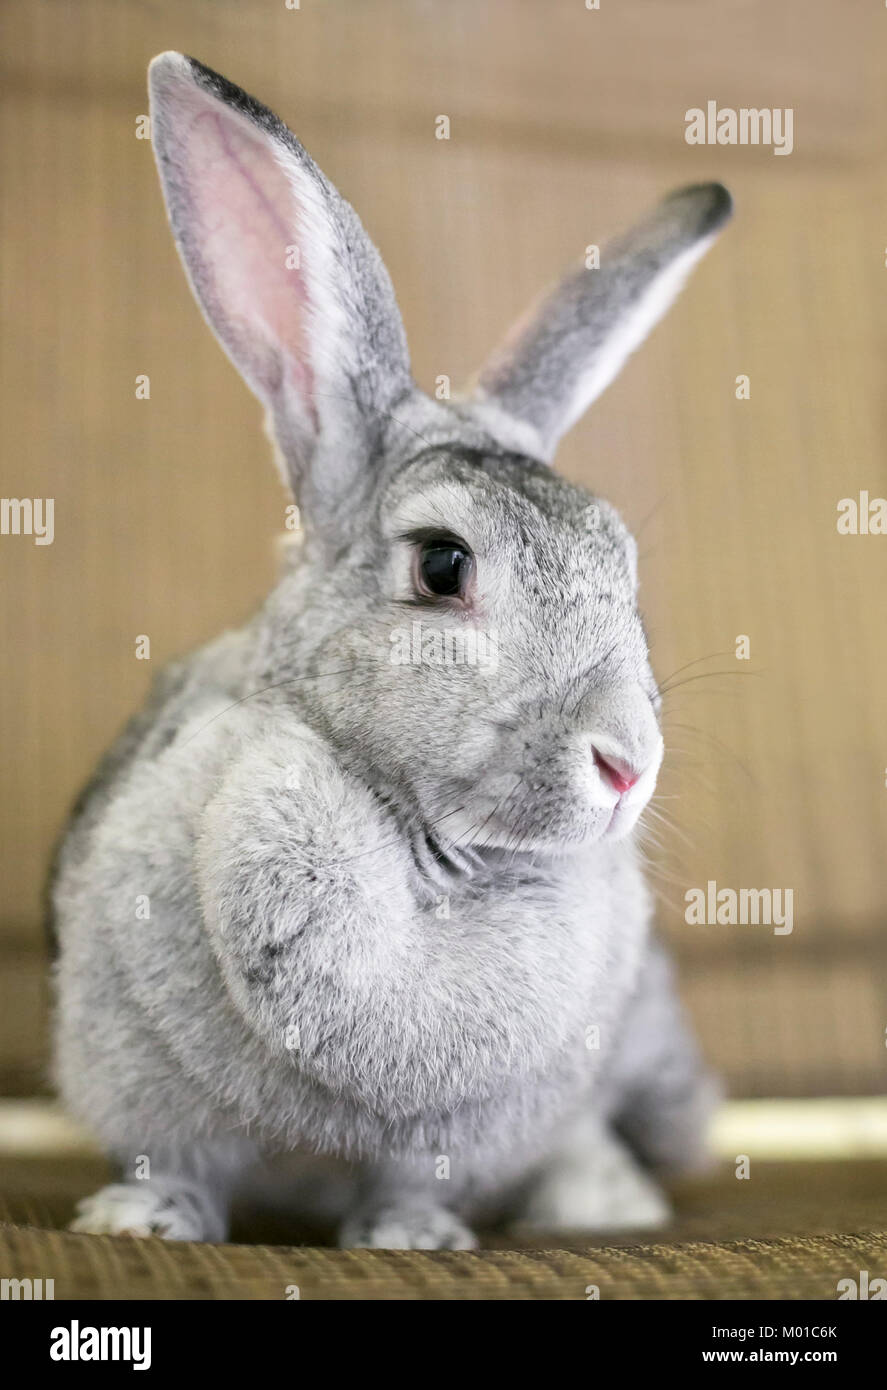 Portrait of a gray Chinchilla Rabbit Stock Photo